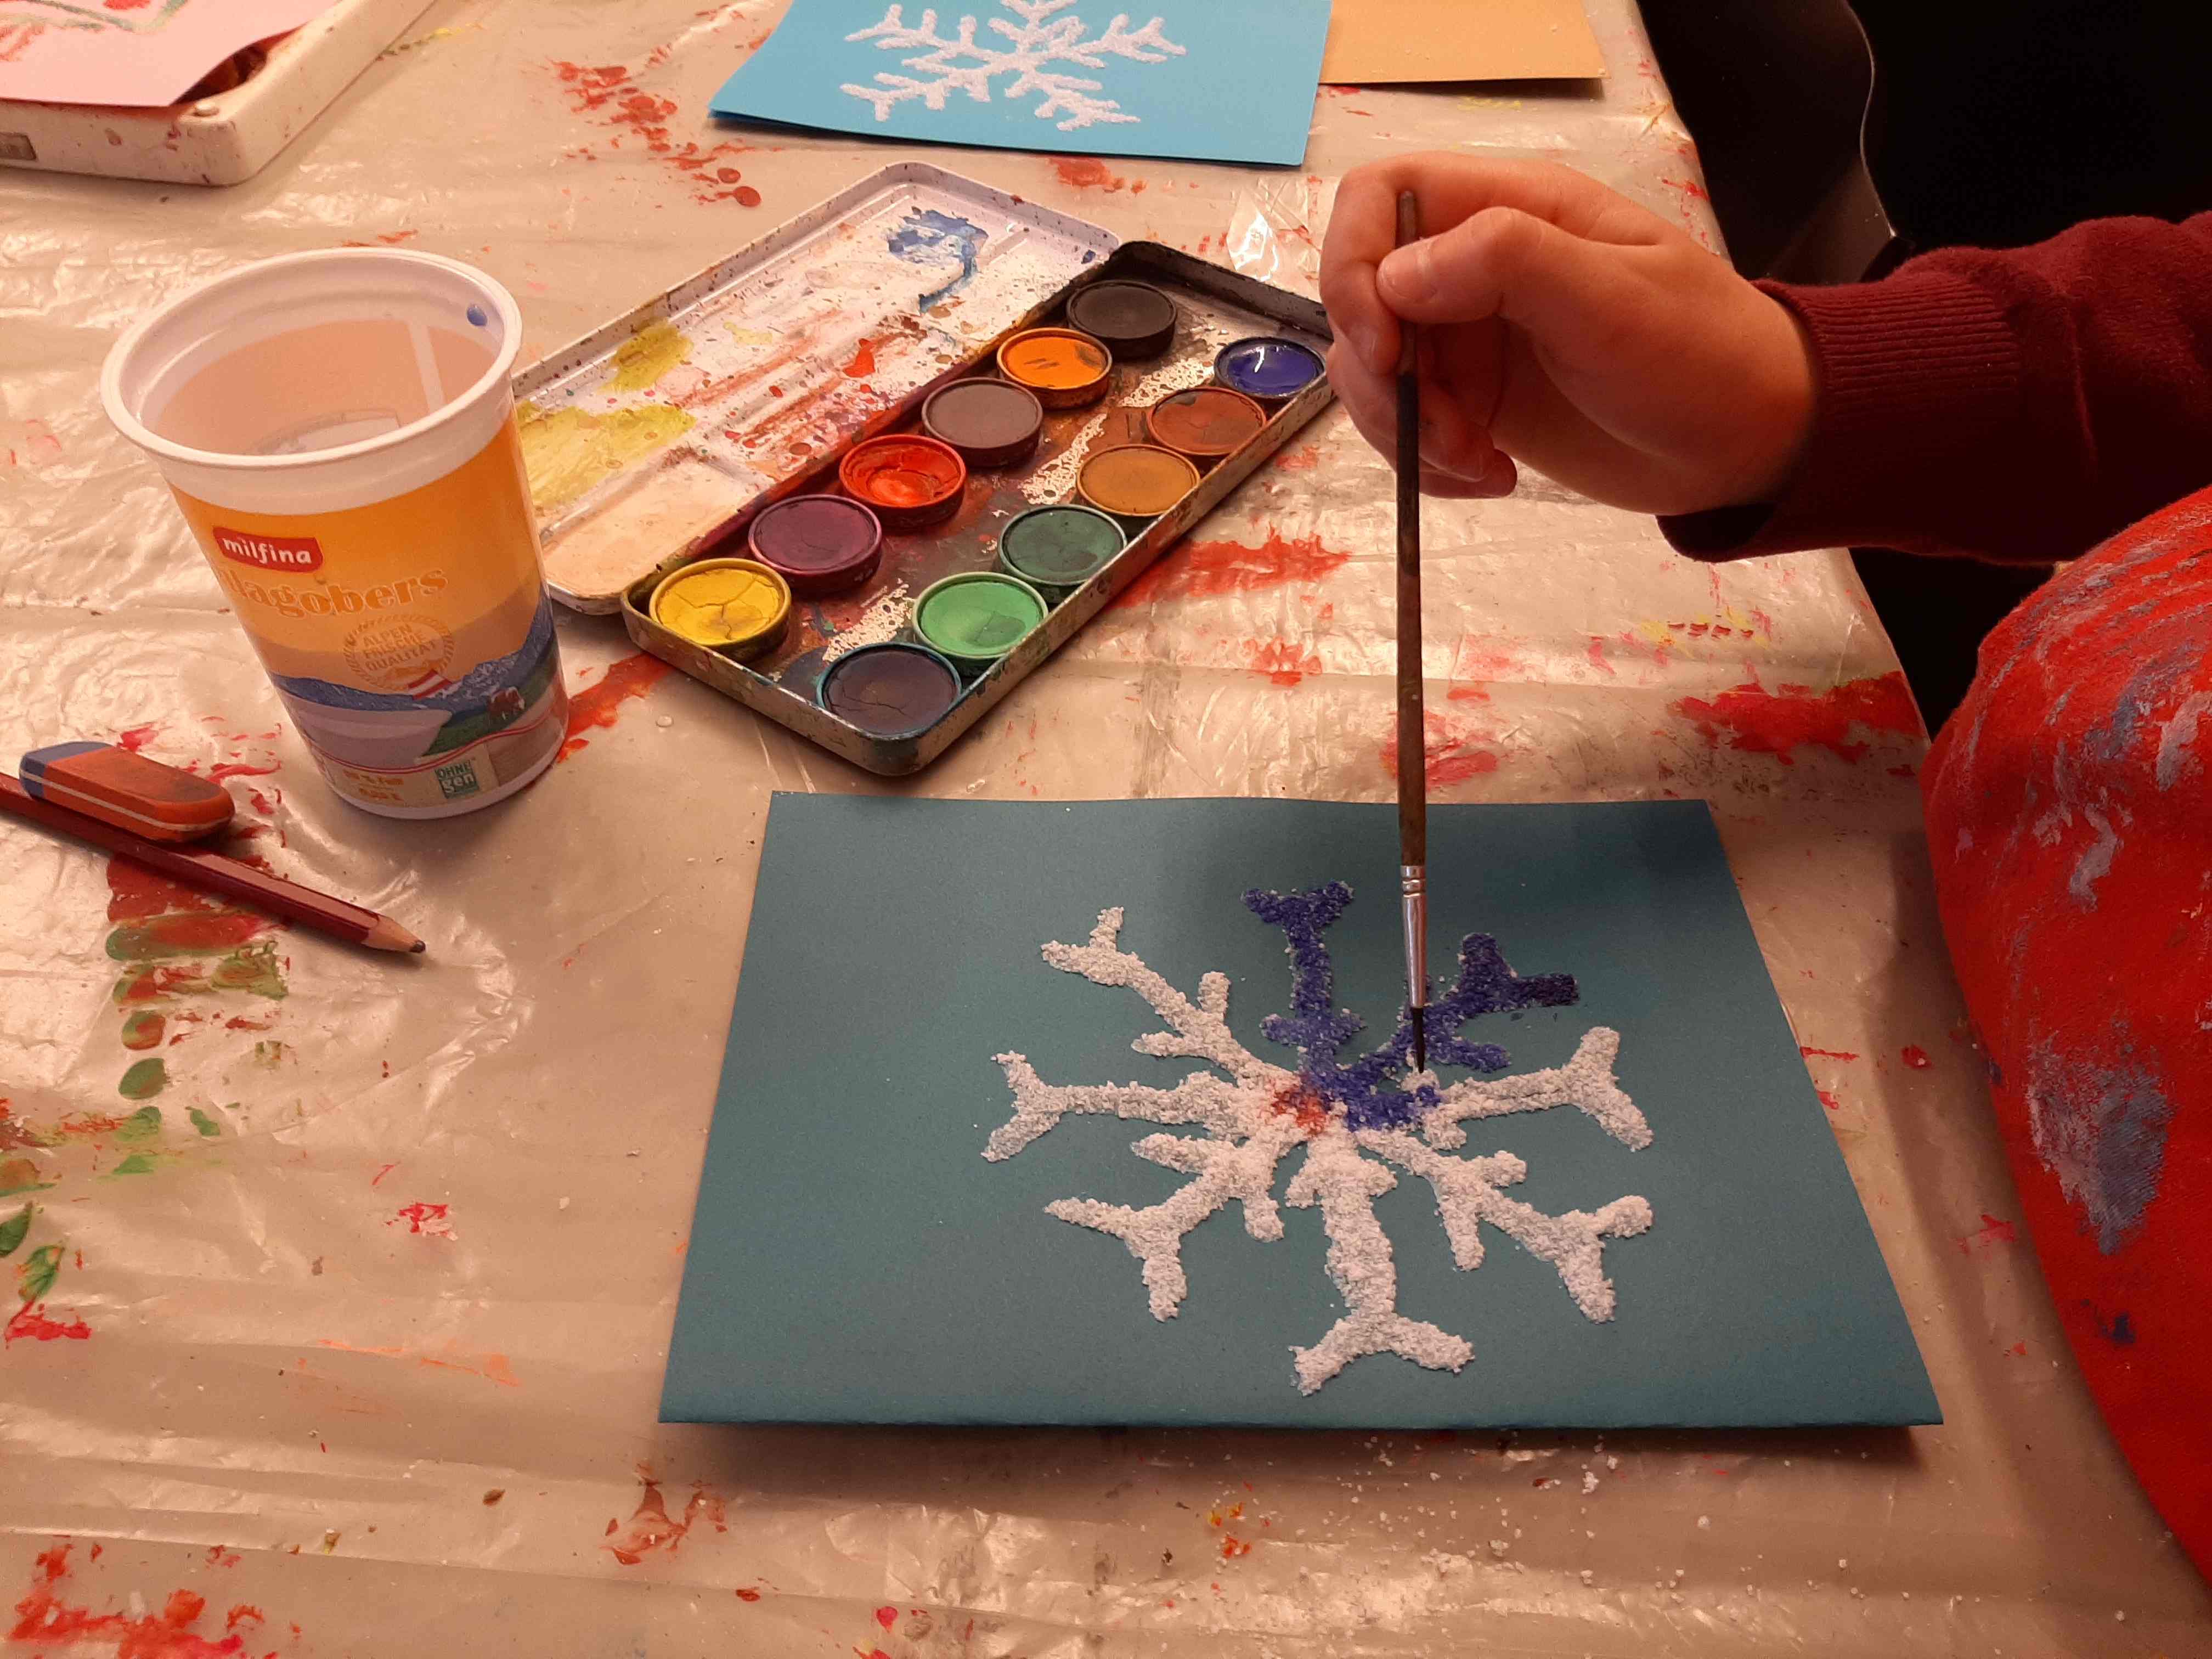 Workshop Weihnachtsatelier: Kind malt eine Glitzer-Schneeflocke im MMKK